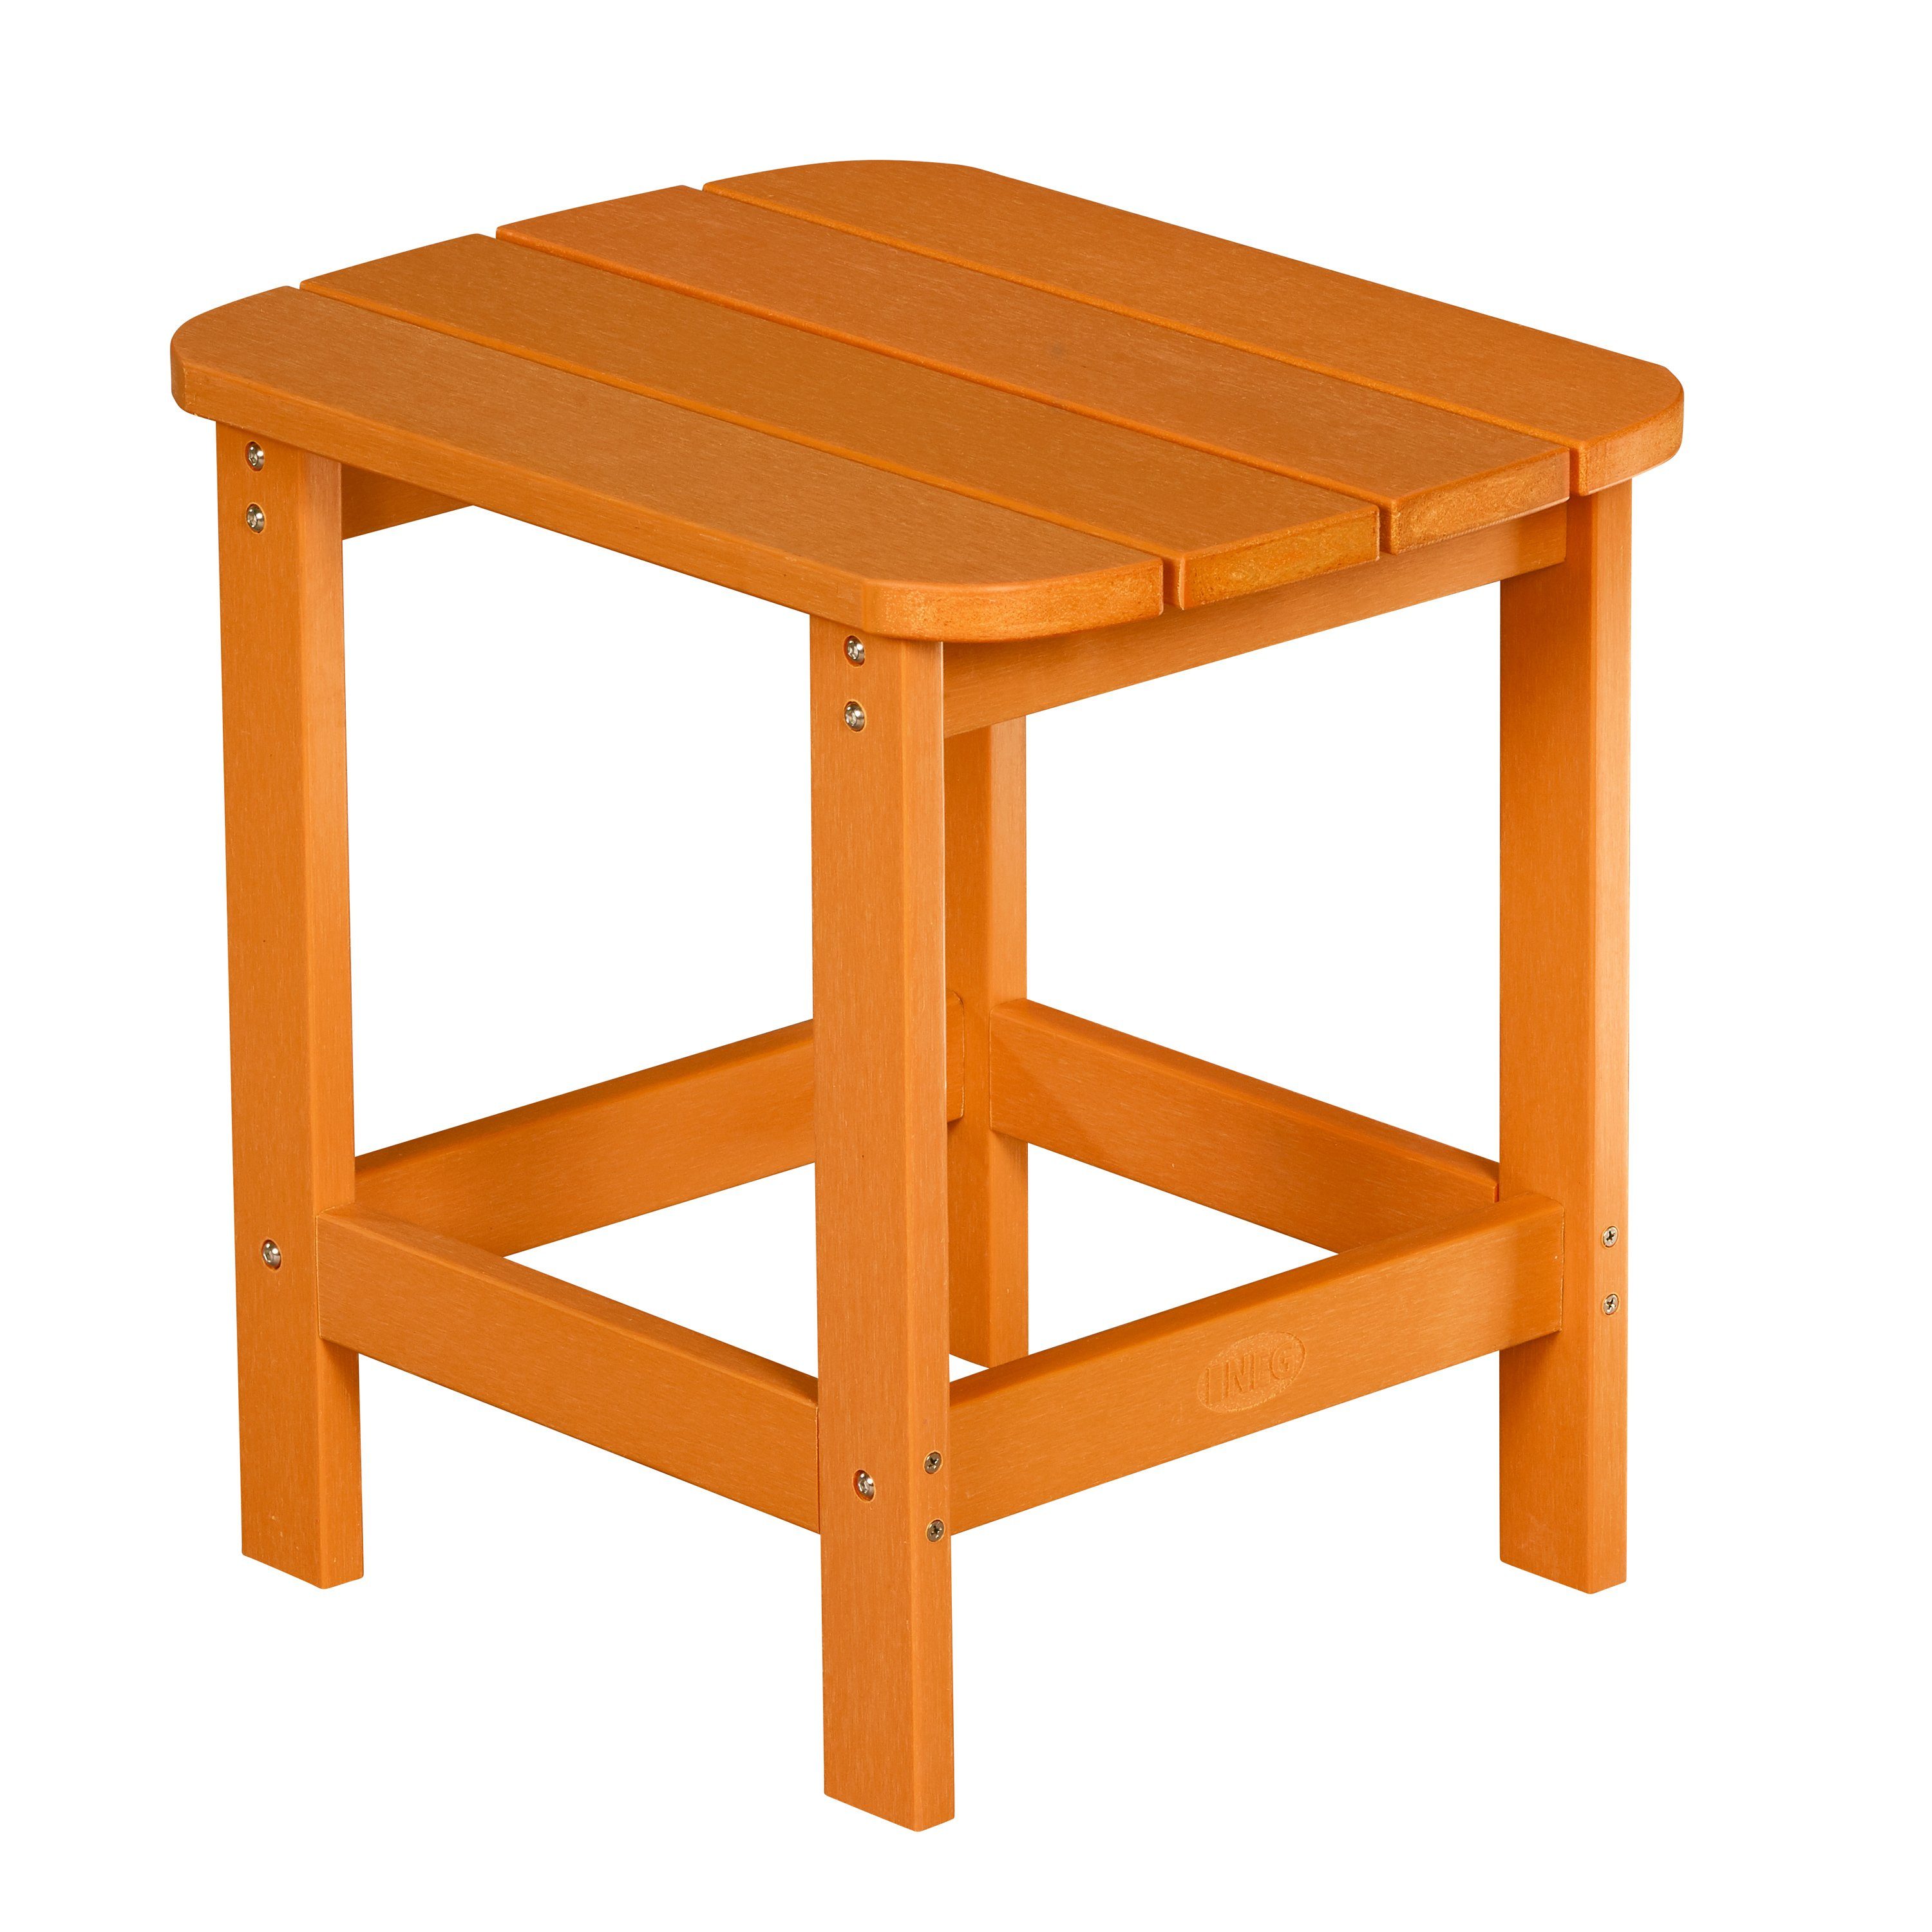 NEG NEG Adirondack Gartenstuhl orange MARCY Tisch/Beistelltisch